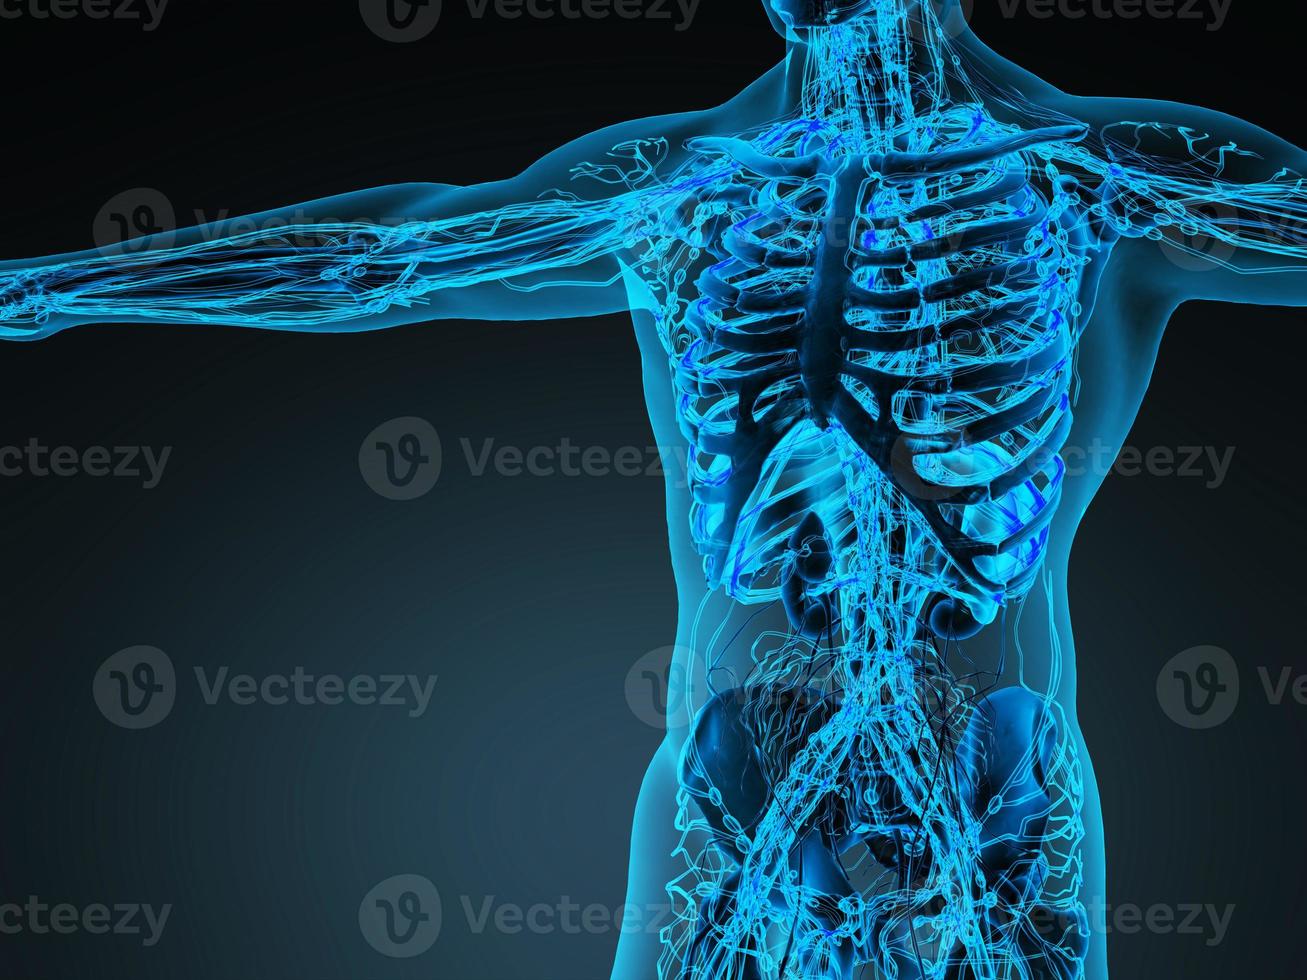 système cardiovasculaire de la circulation humaine avec des os dans un corps transparent photo